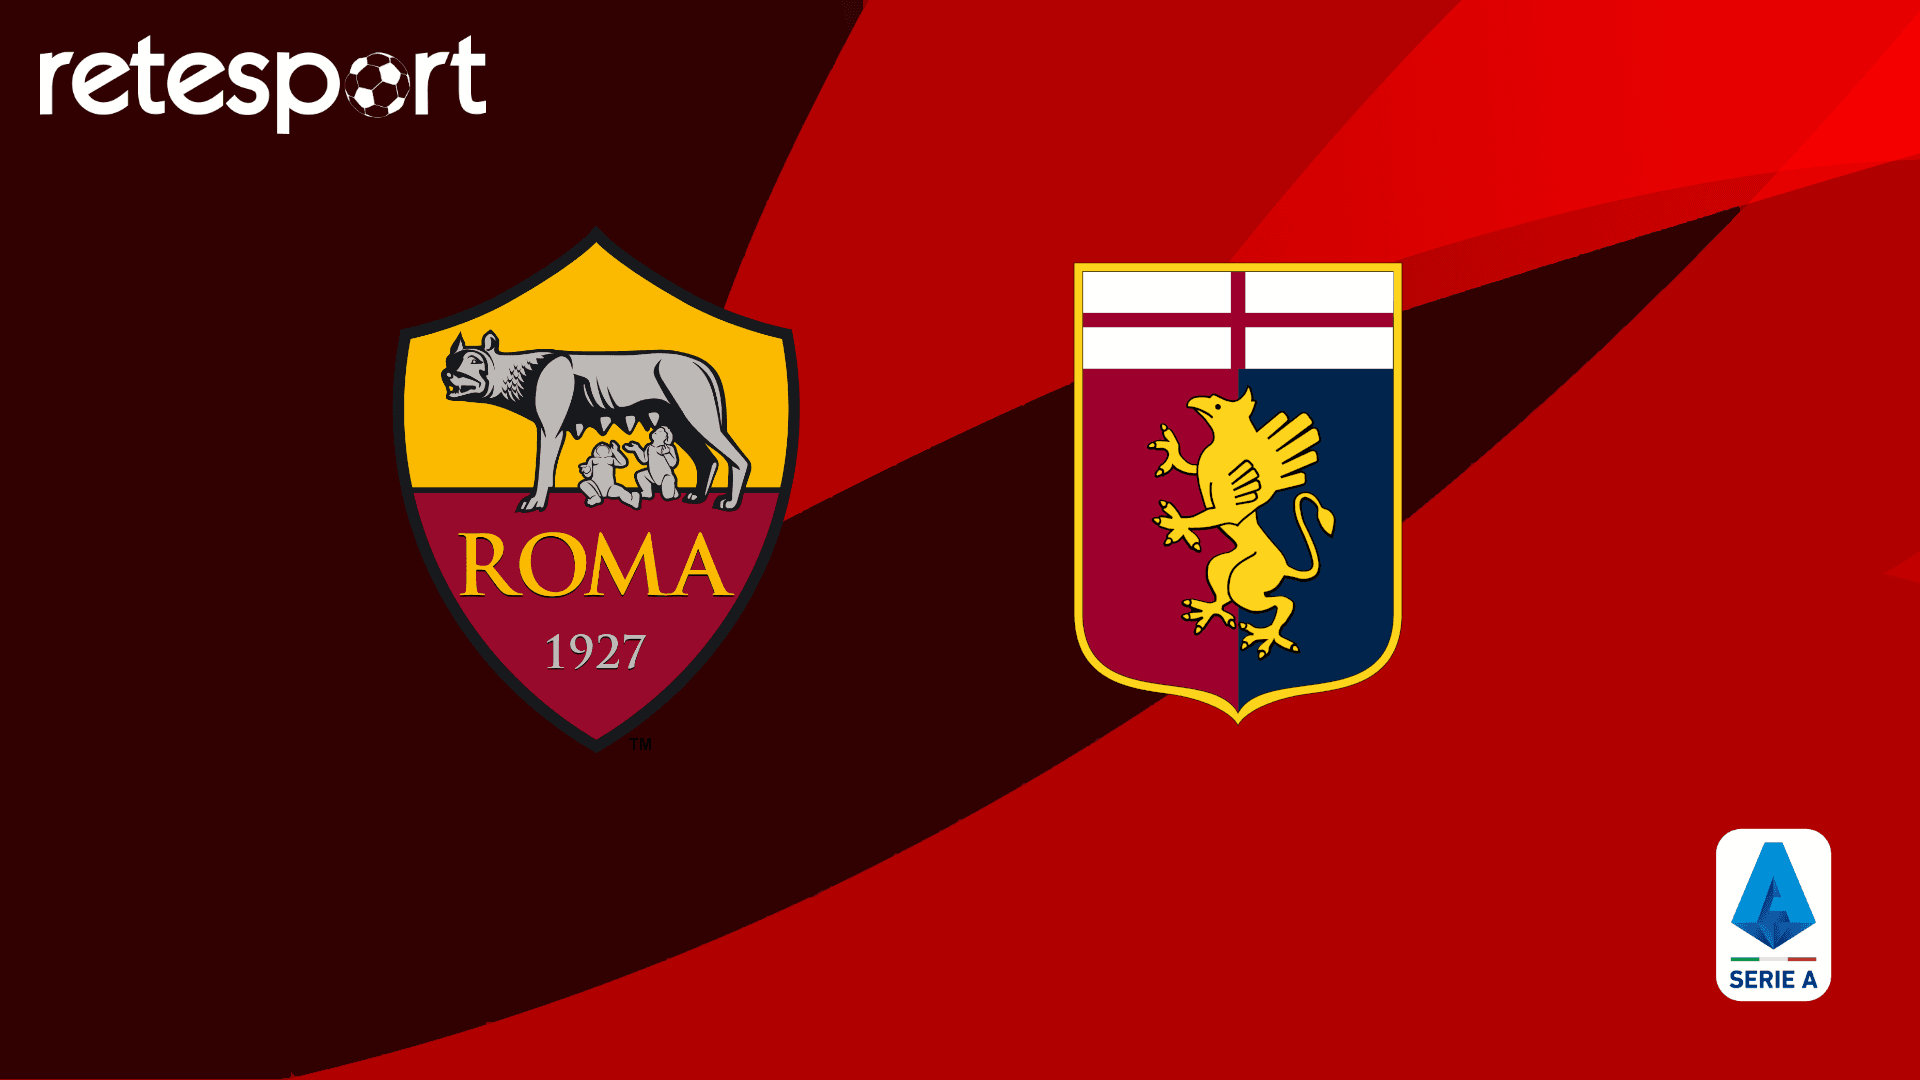 Roma-Genoa 1-0 (79′ Lukaku) – Vince la Roma, aritmetico il sesto posto